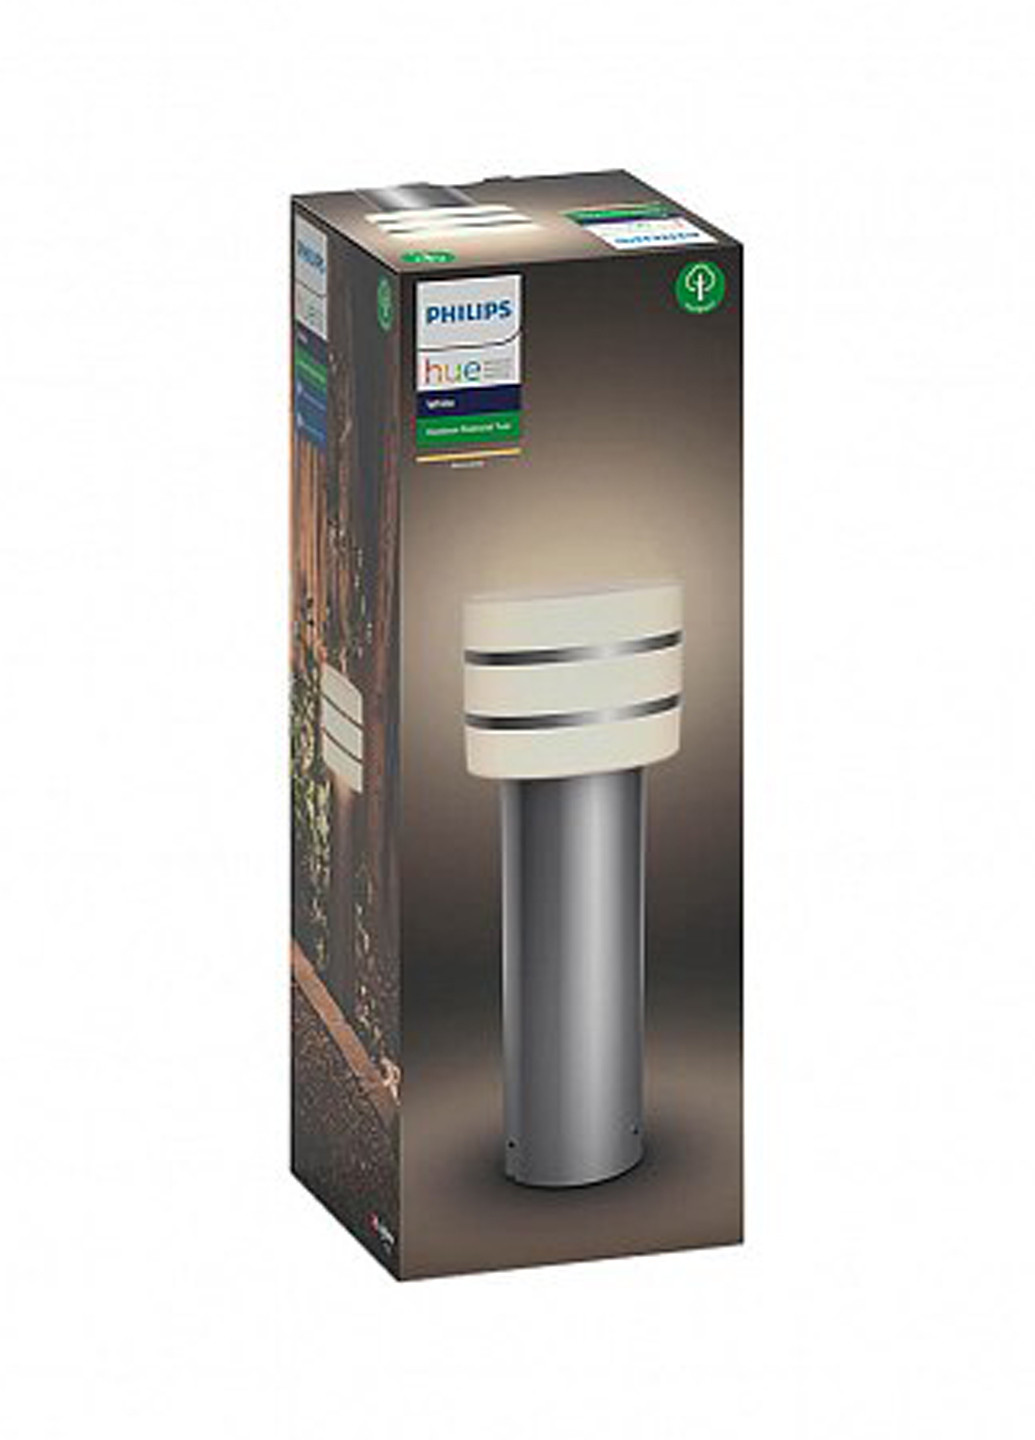 Смарт-светильник Tuar pedestal inox 1x9.5W 230V (17405/47/P0) Philips смарт tuar pedestal inox 1x9.5w 230v (17405/47/p0) (142289774)